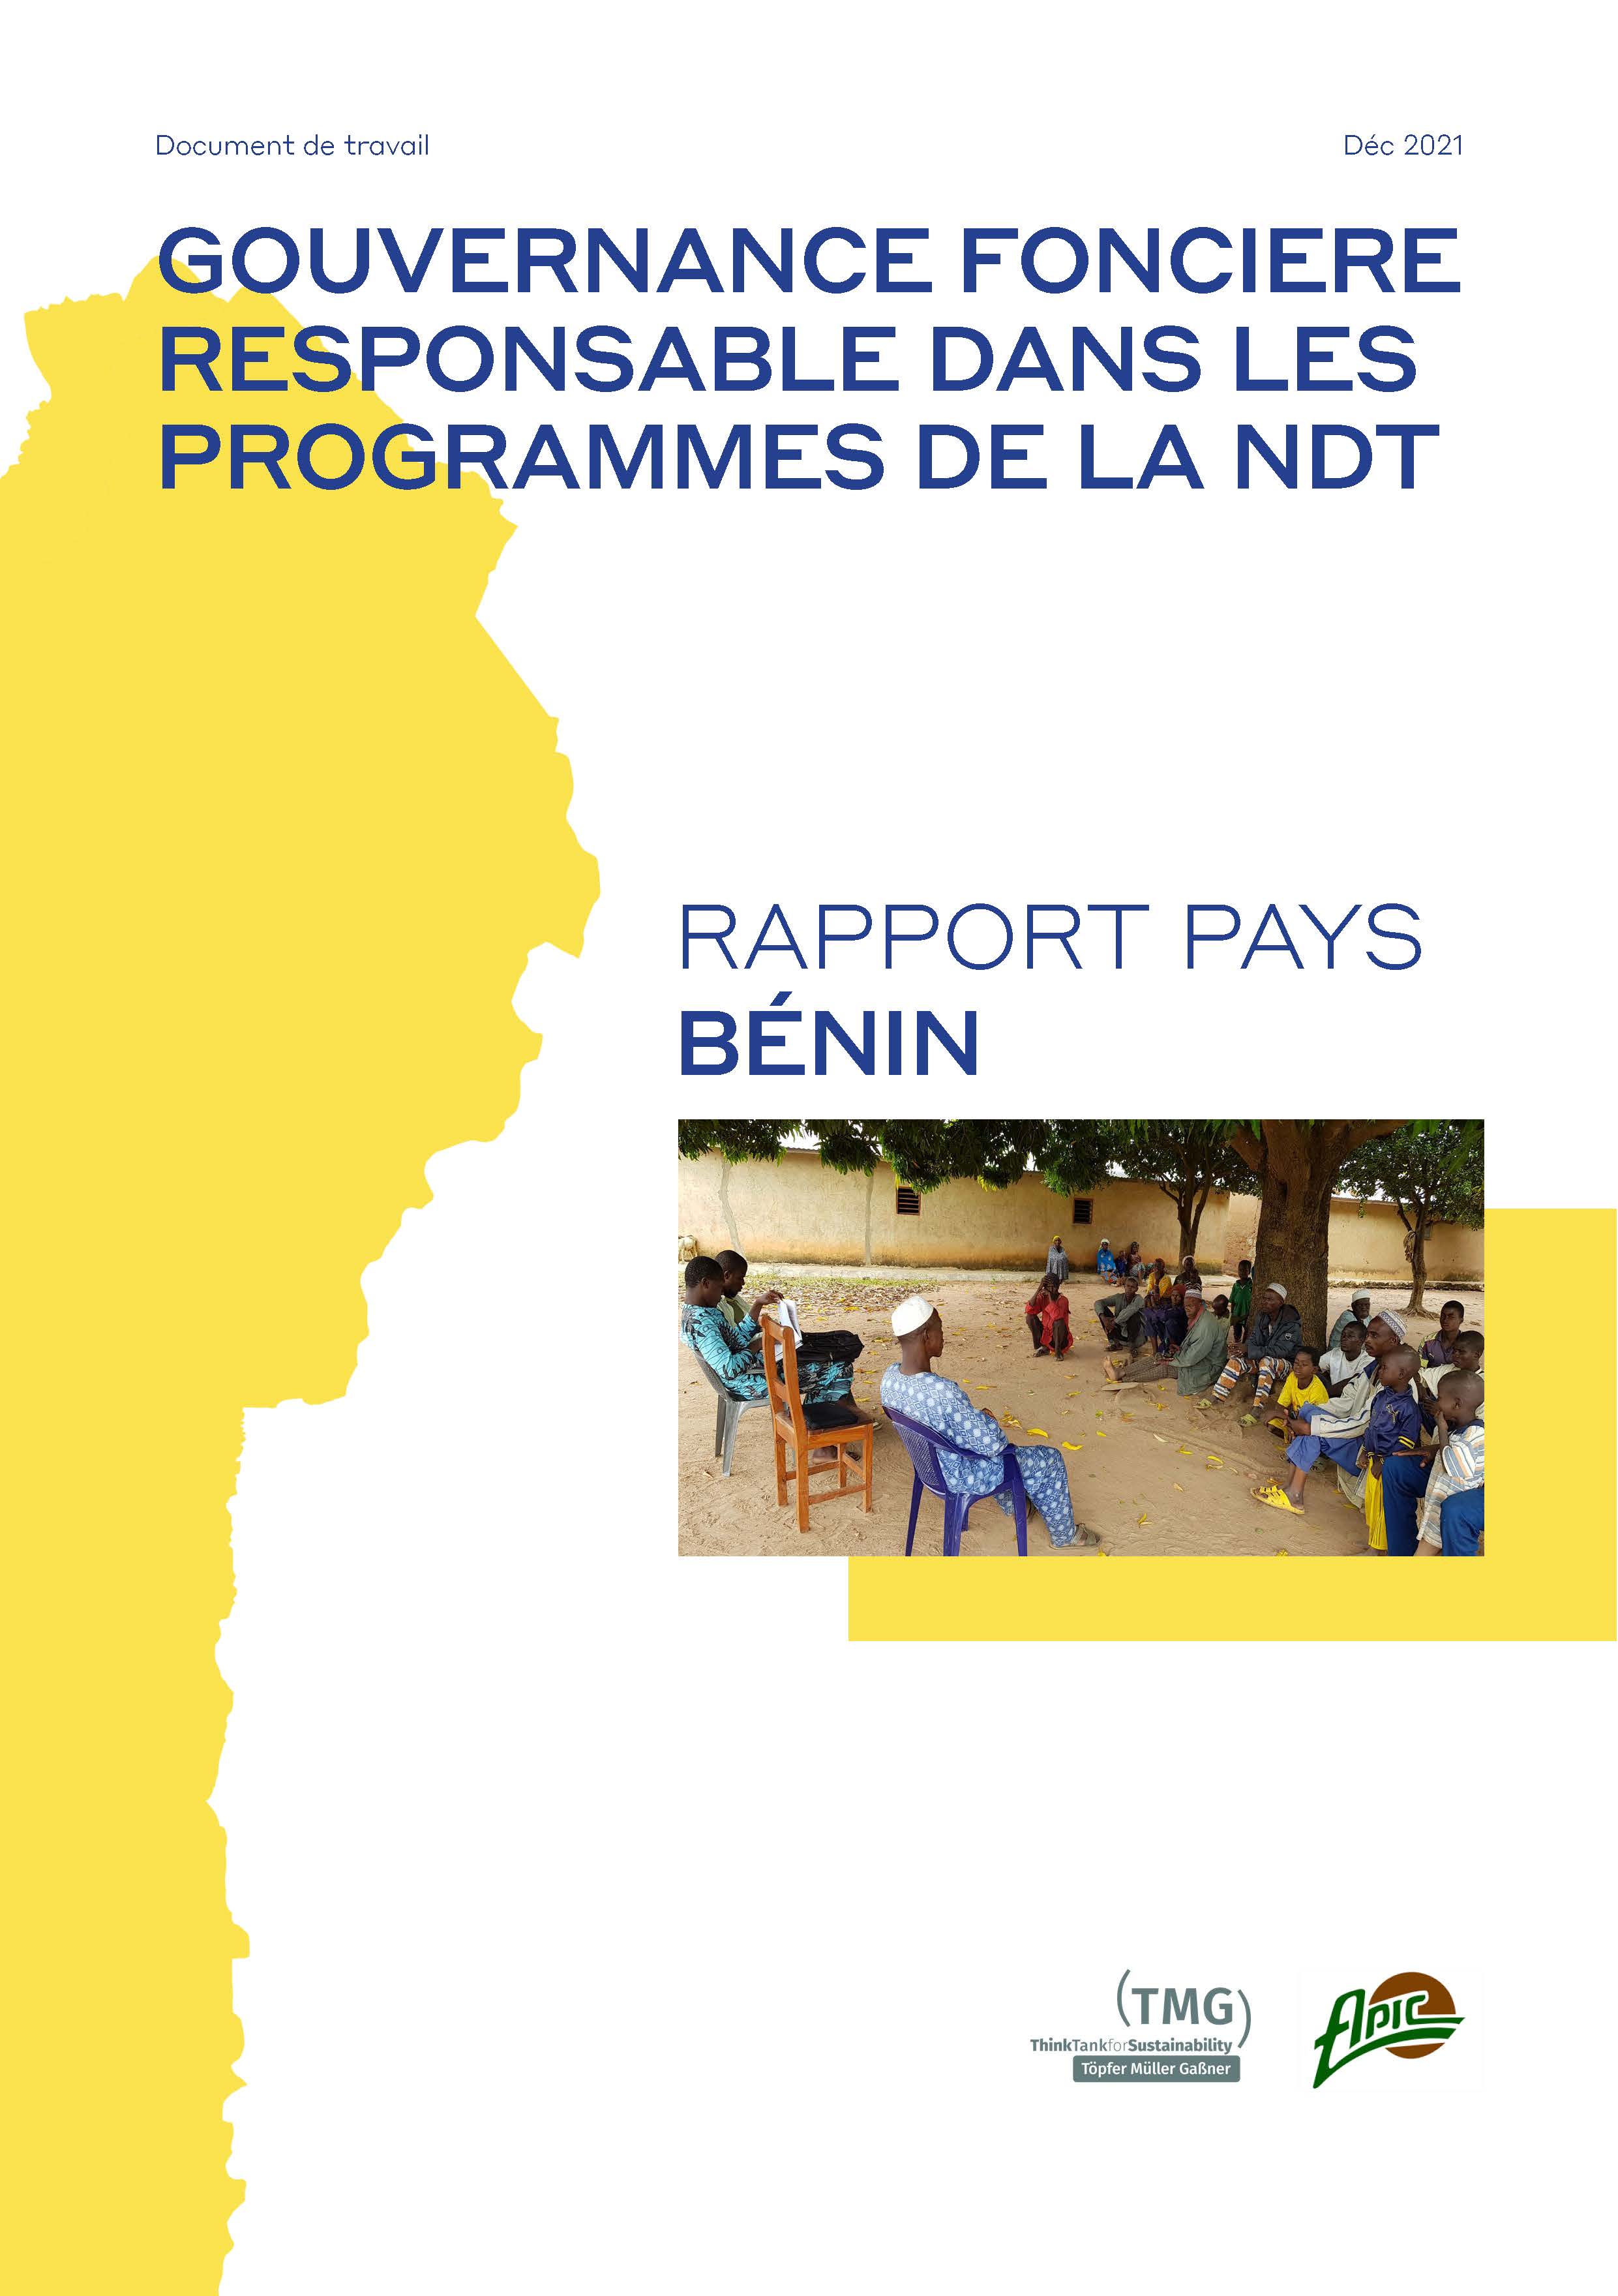 Governance foncière responsable dans les programmes de la NDT au Bénin